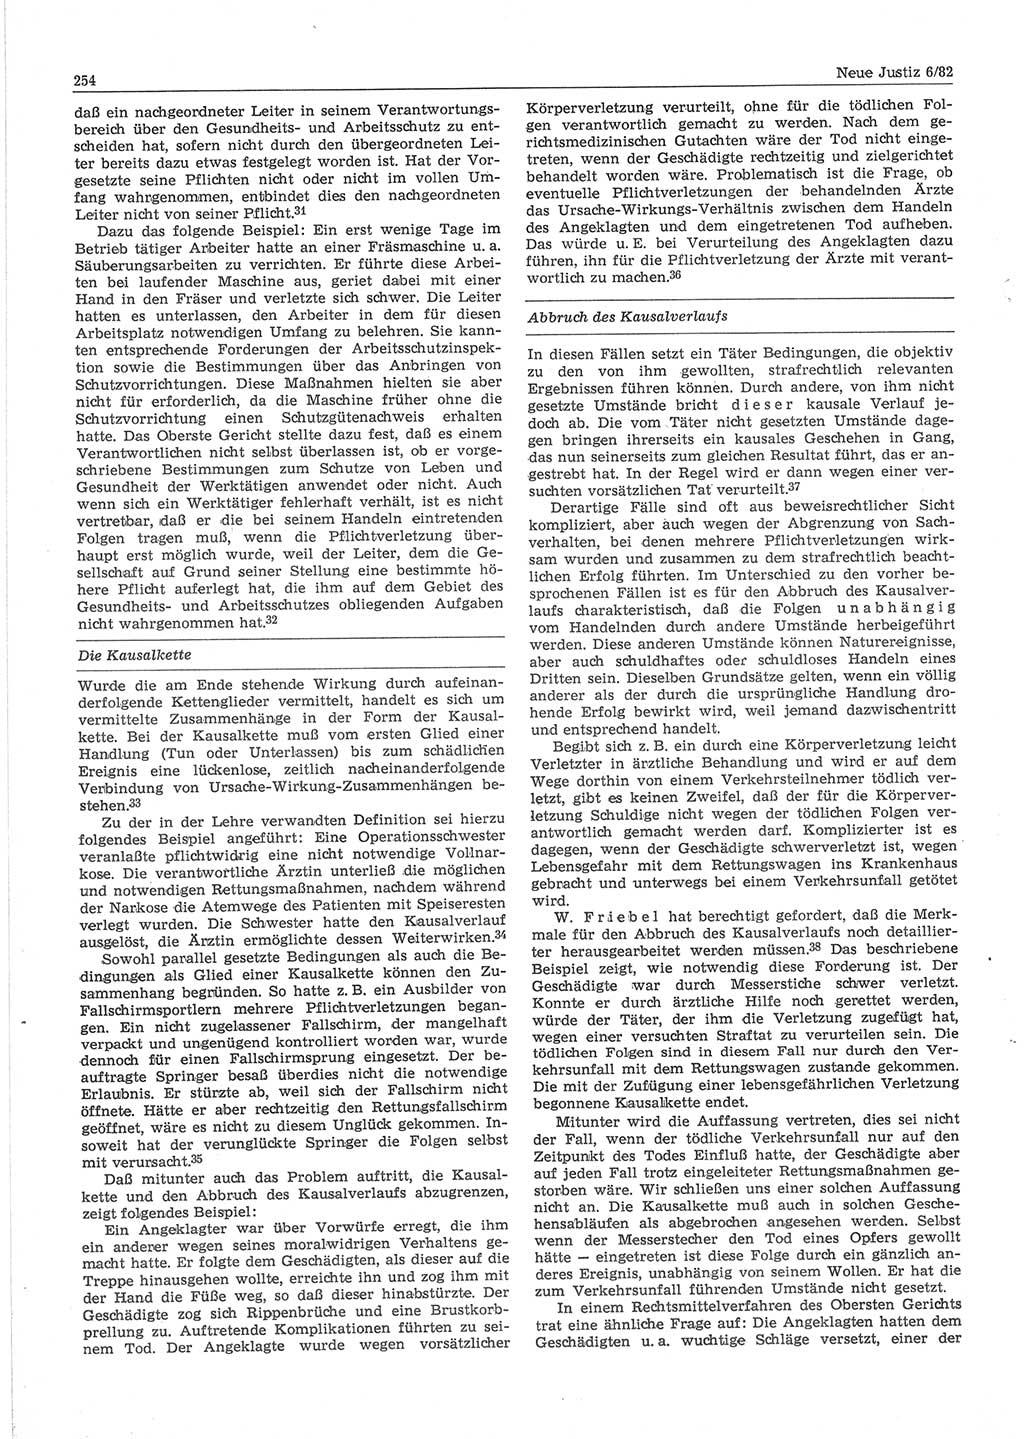 Neue Justiz (NJ), Zeitschrift für sozialistisches Recht und Gesetzlichkeit [Deutsche Demokratische Republik (DDR)], 36. Jahrgang 1982, Seite 254 (NJ DDR 1982, S. 254)